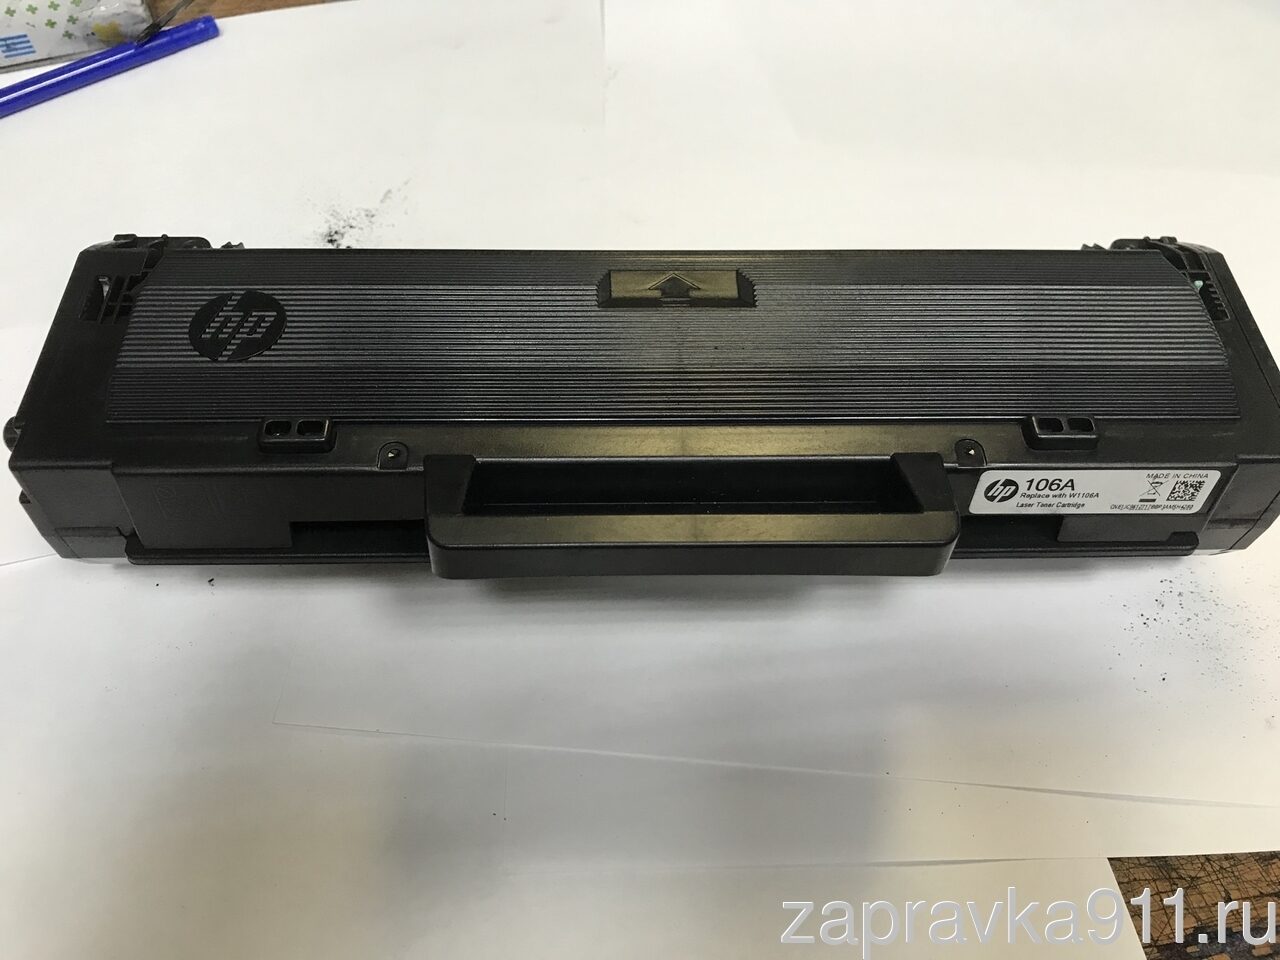 Принтеры HP Deskjet - Замена чернильных картриджей | Поддержка HP®